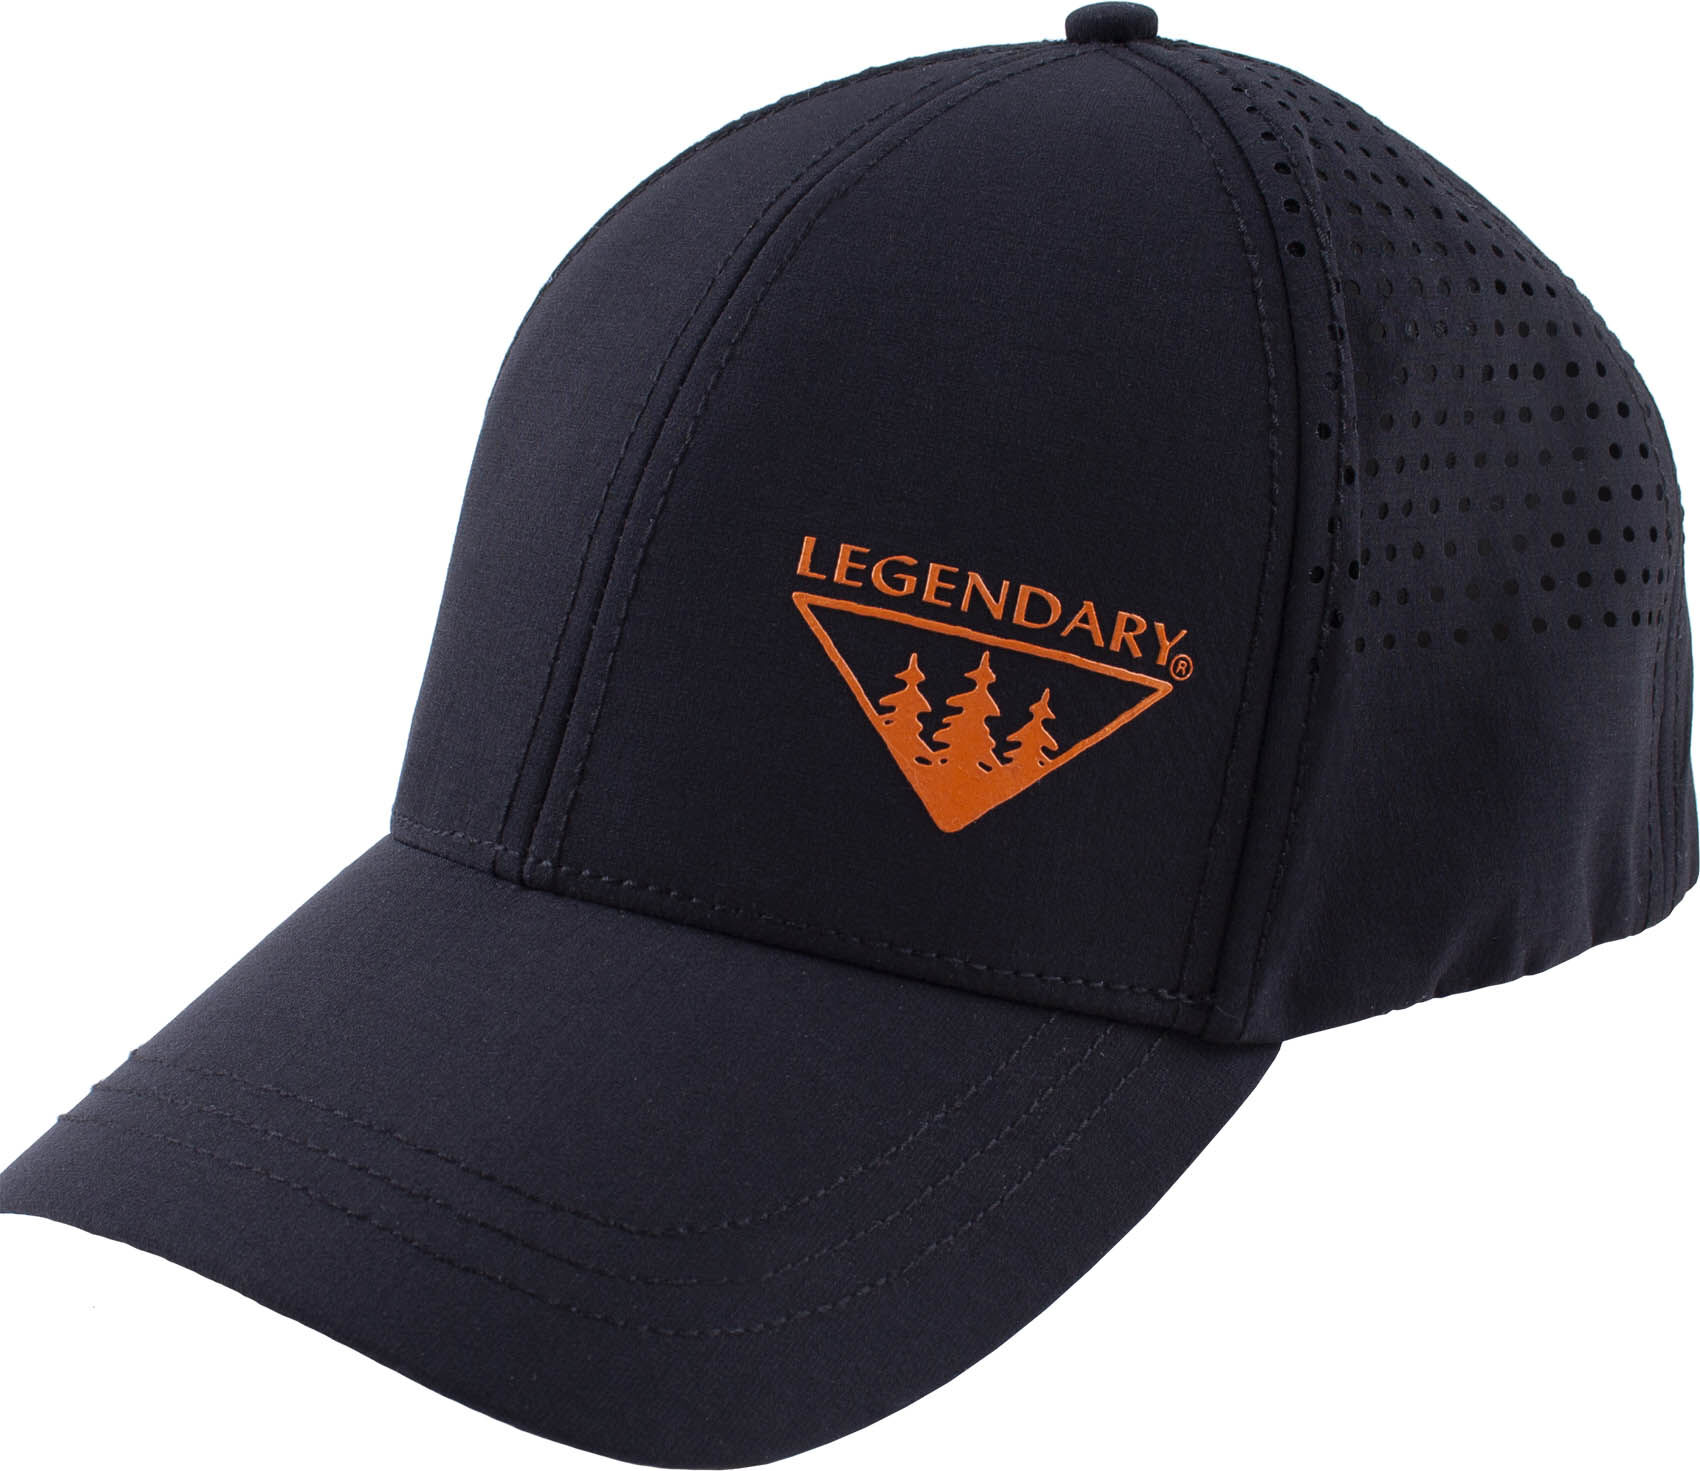 Legendary Whitetails Scout Series Cap Black